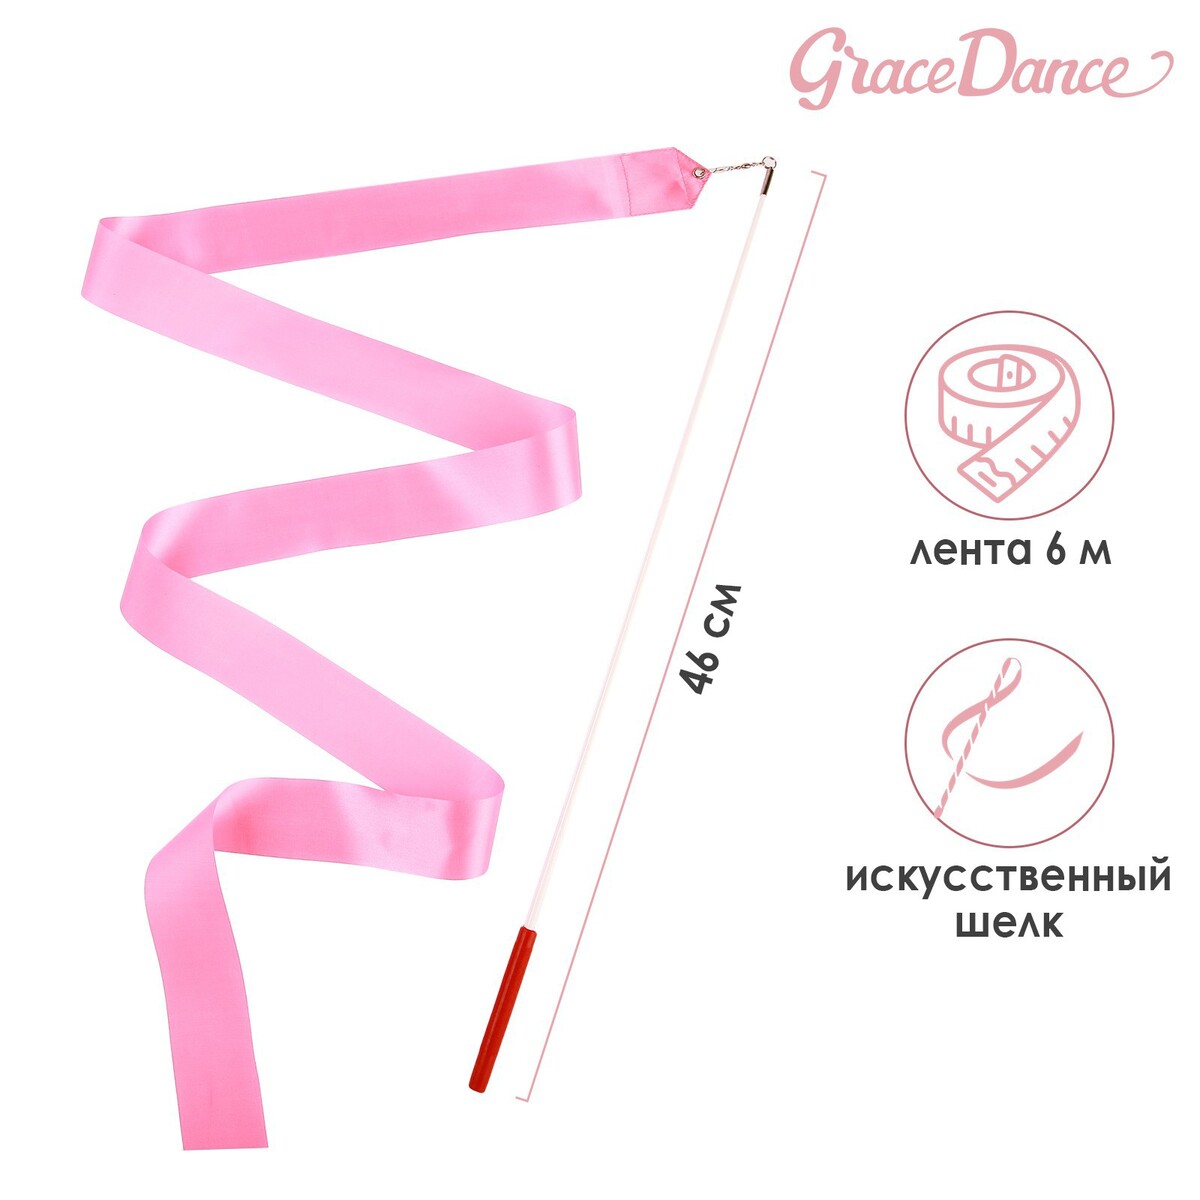 Лента для художественной гимнастики с палочкой grace dance, 6 м, цвет розовый лента гимнастическая с палочкой grace dance 6 м розовый